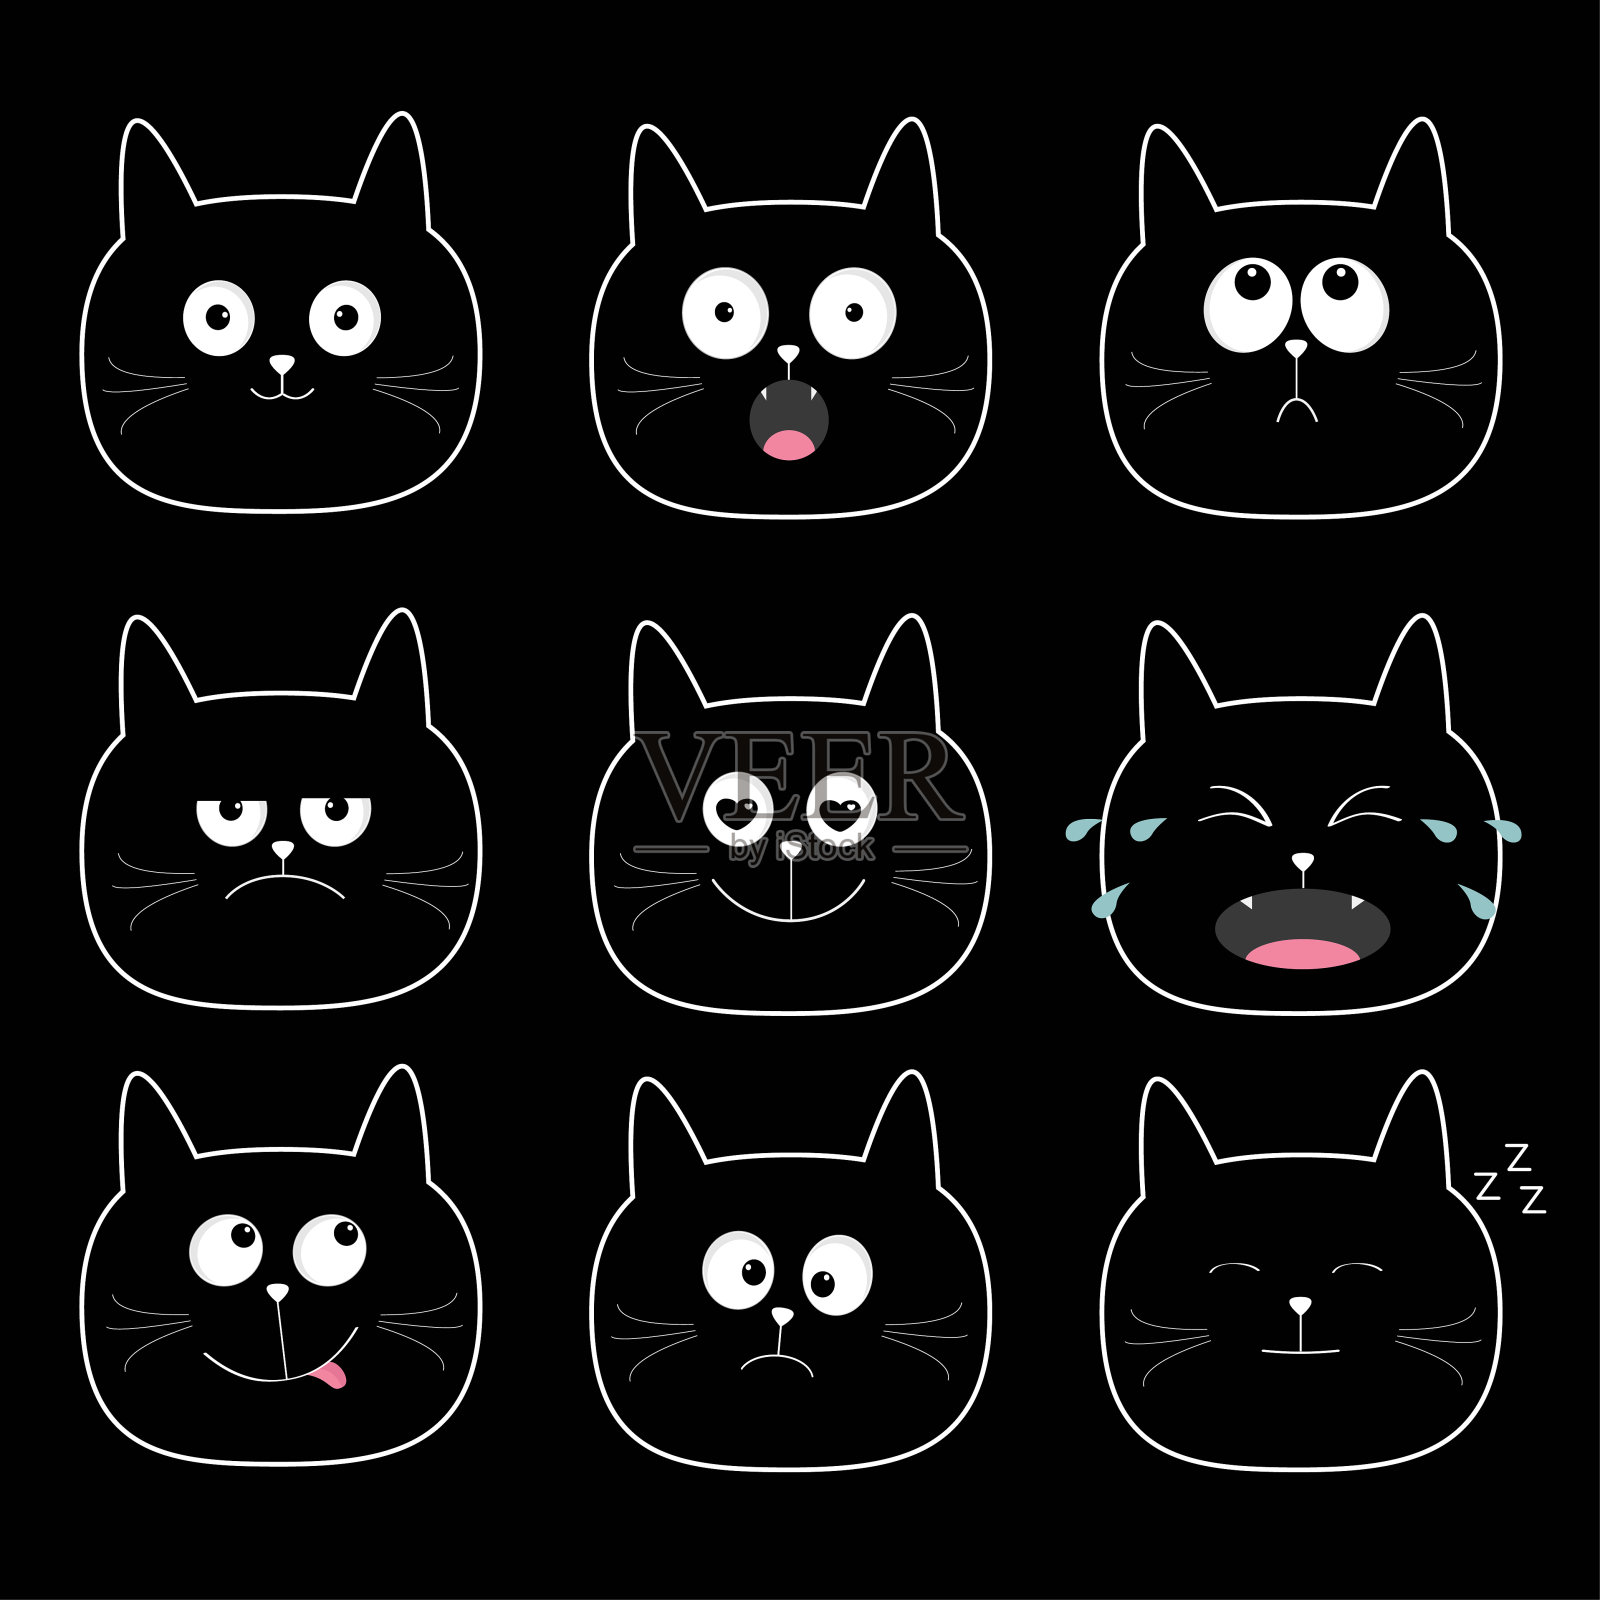 可爱的黑猫头套。有趣的卡通人物。不同的情绪面对集合。哭泣的，快乐的，微笑的，打鼾的，悲伤的，生气的小猫。白色的背景。平插画图片素材